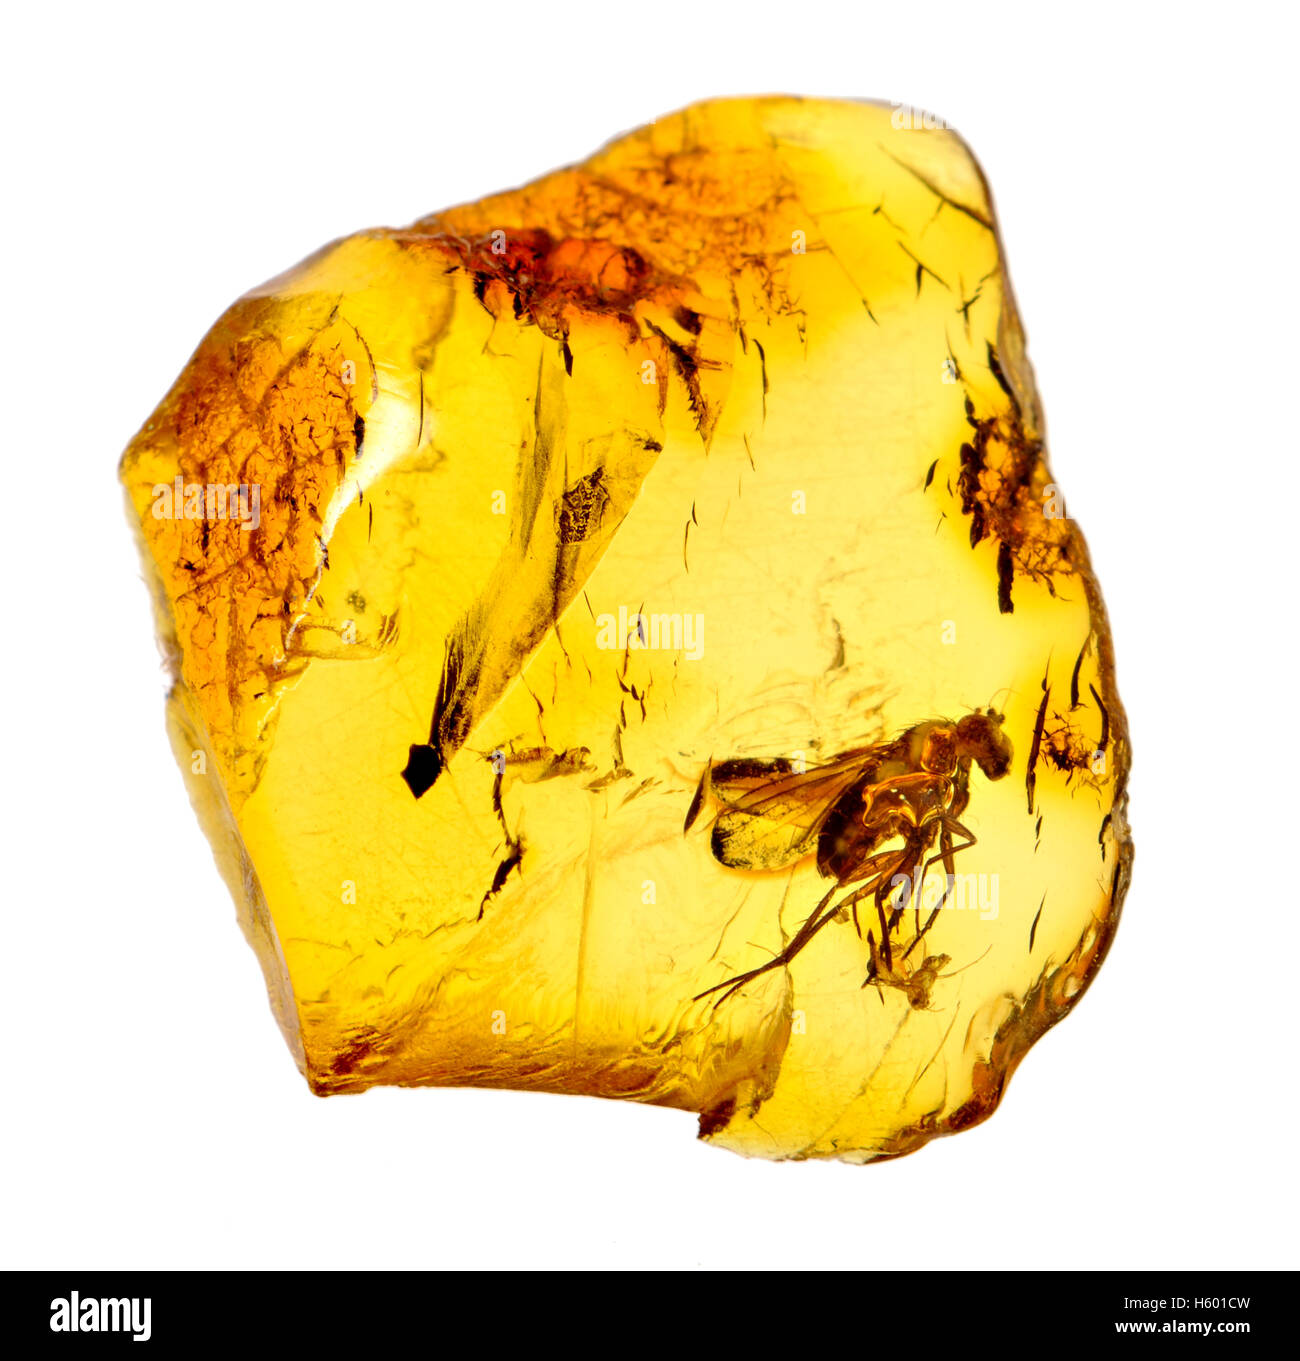 Voler dans l'ambre baltique préhistorique (40-50m ans) Banque D'Images